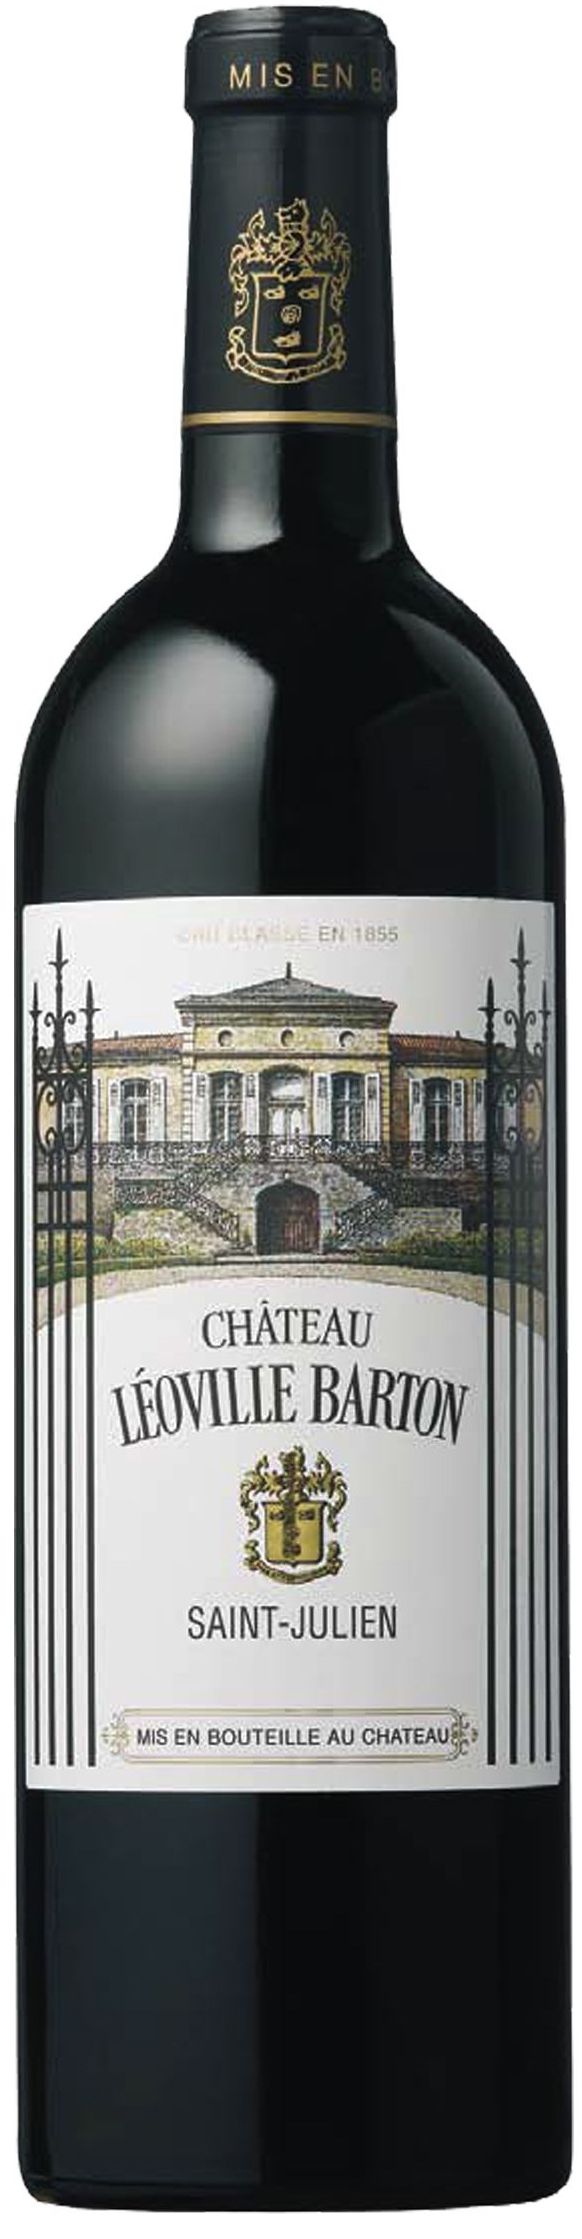 Chateau Leoville-Barton, 2003